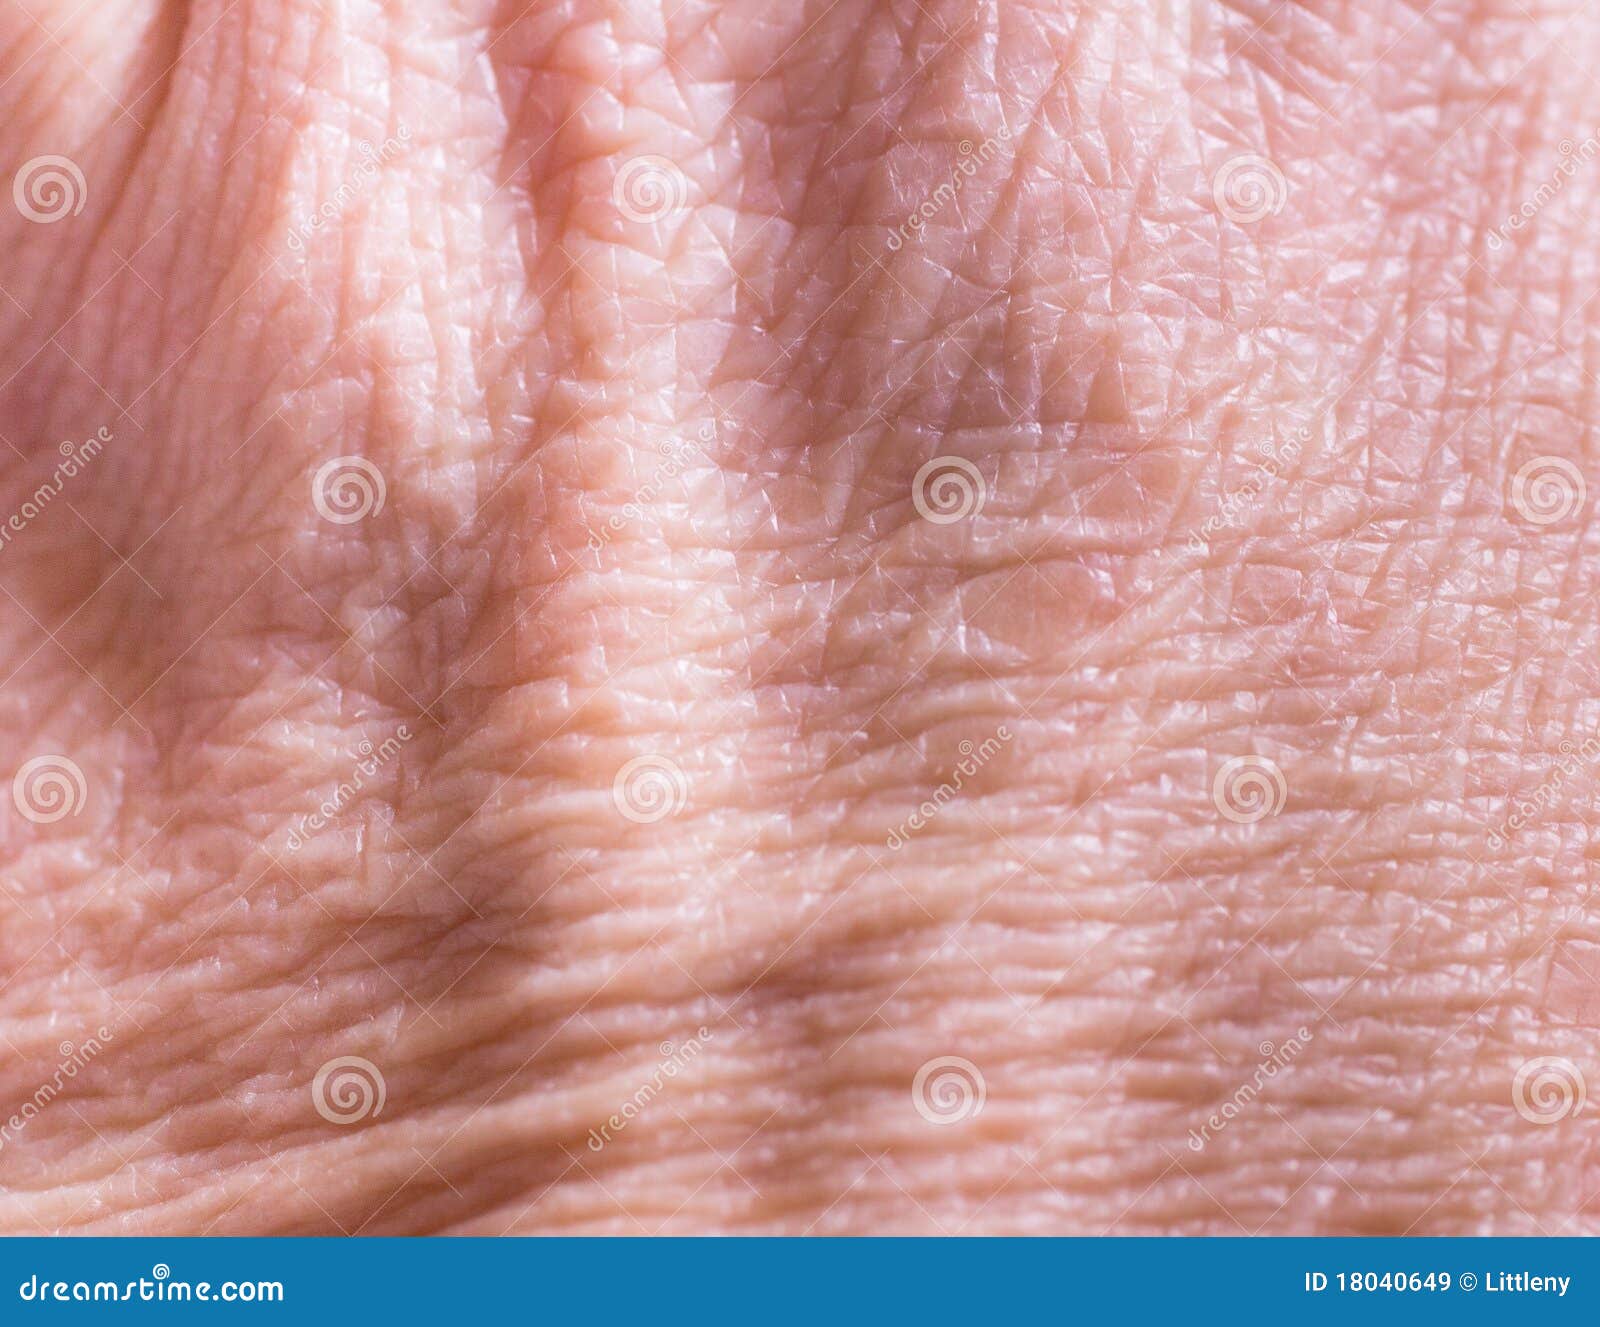 Сухая морщинистая кожа рук